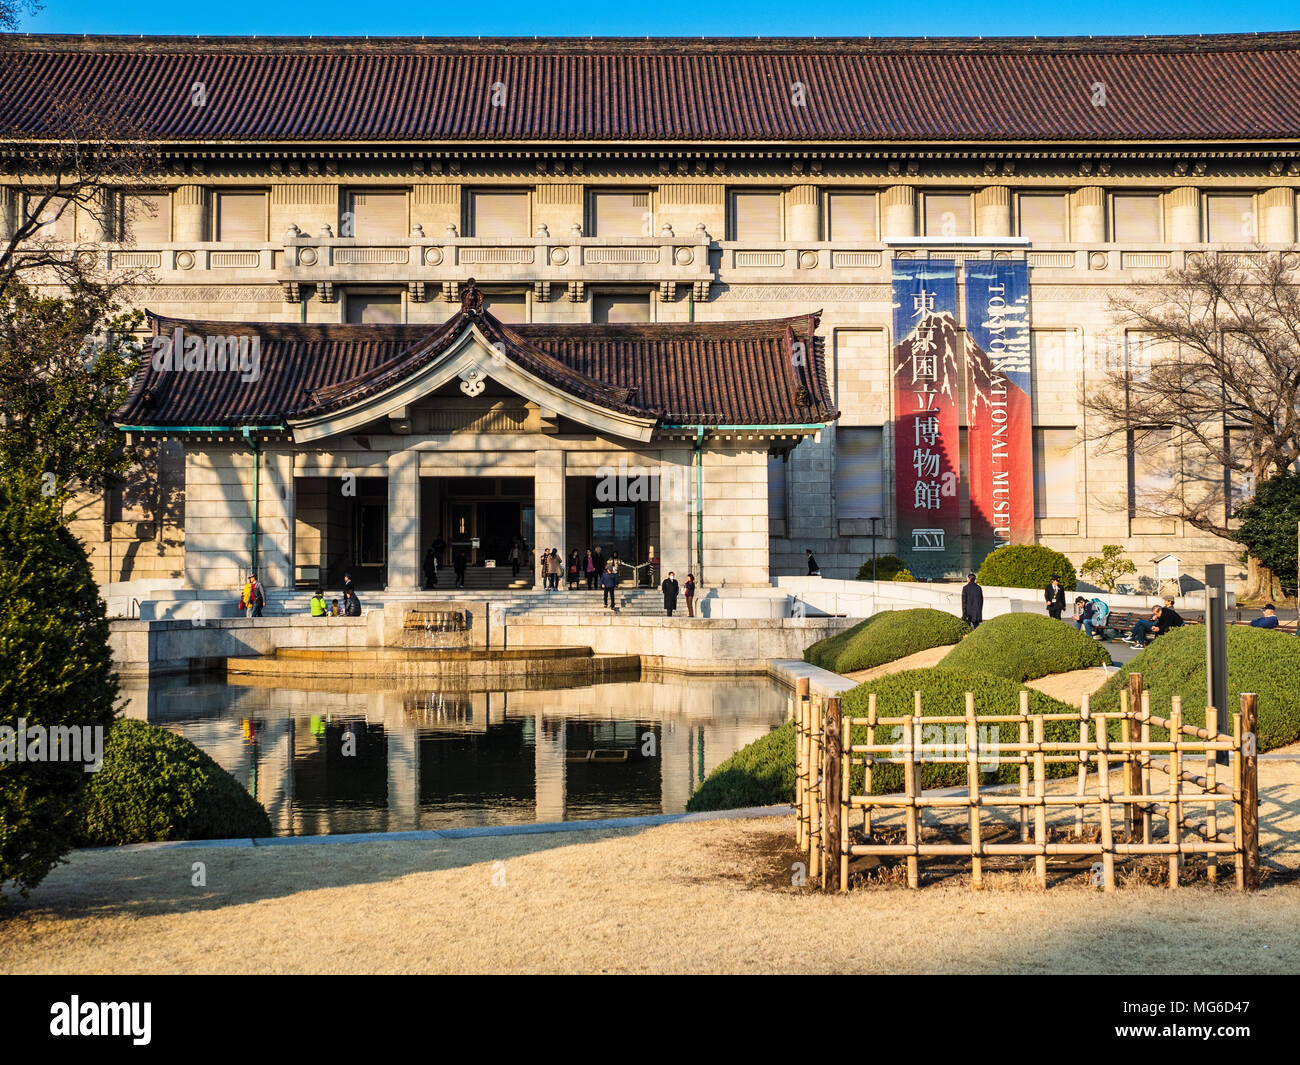 Tokyo National Museum im Ueno Park, Tokyo Japan. Das Nationalmuseum Tokio, das älteste Nationalmuseum Japans, wurde im Jahr 1872 gegründet. Stockfoto